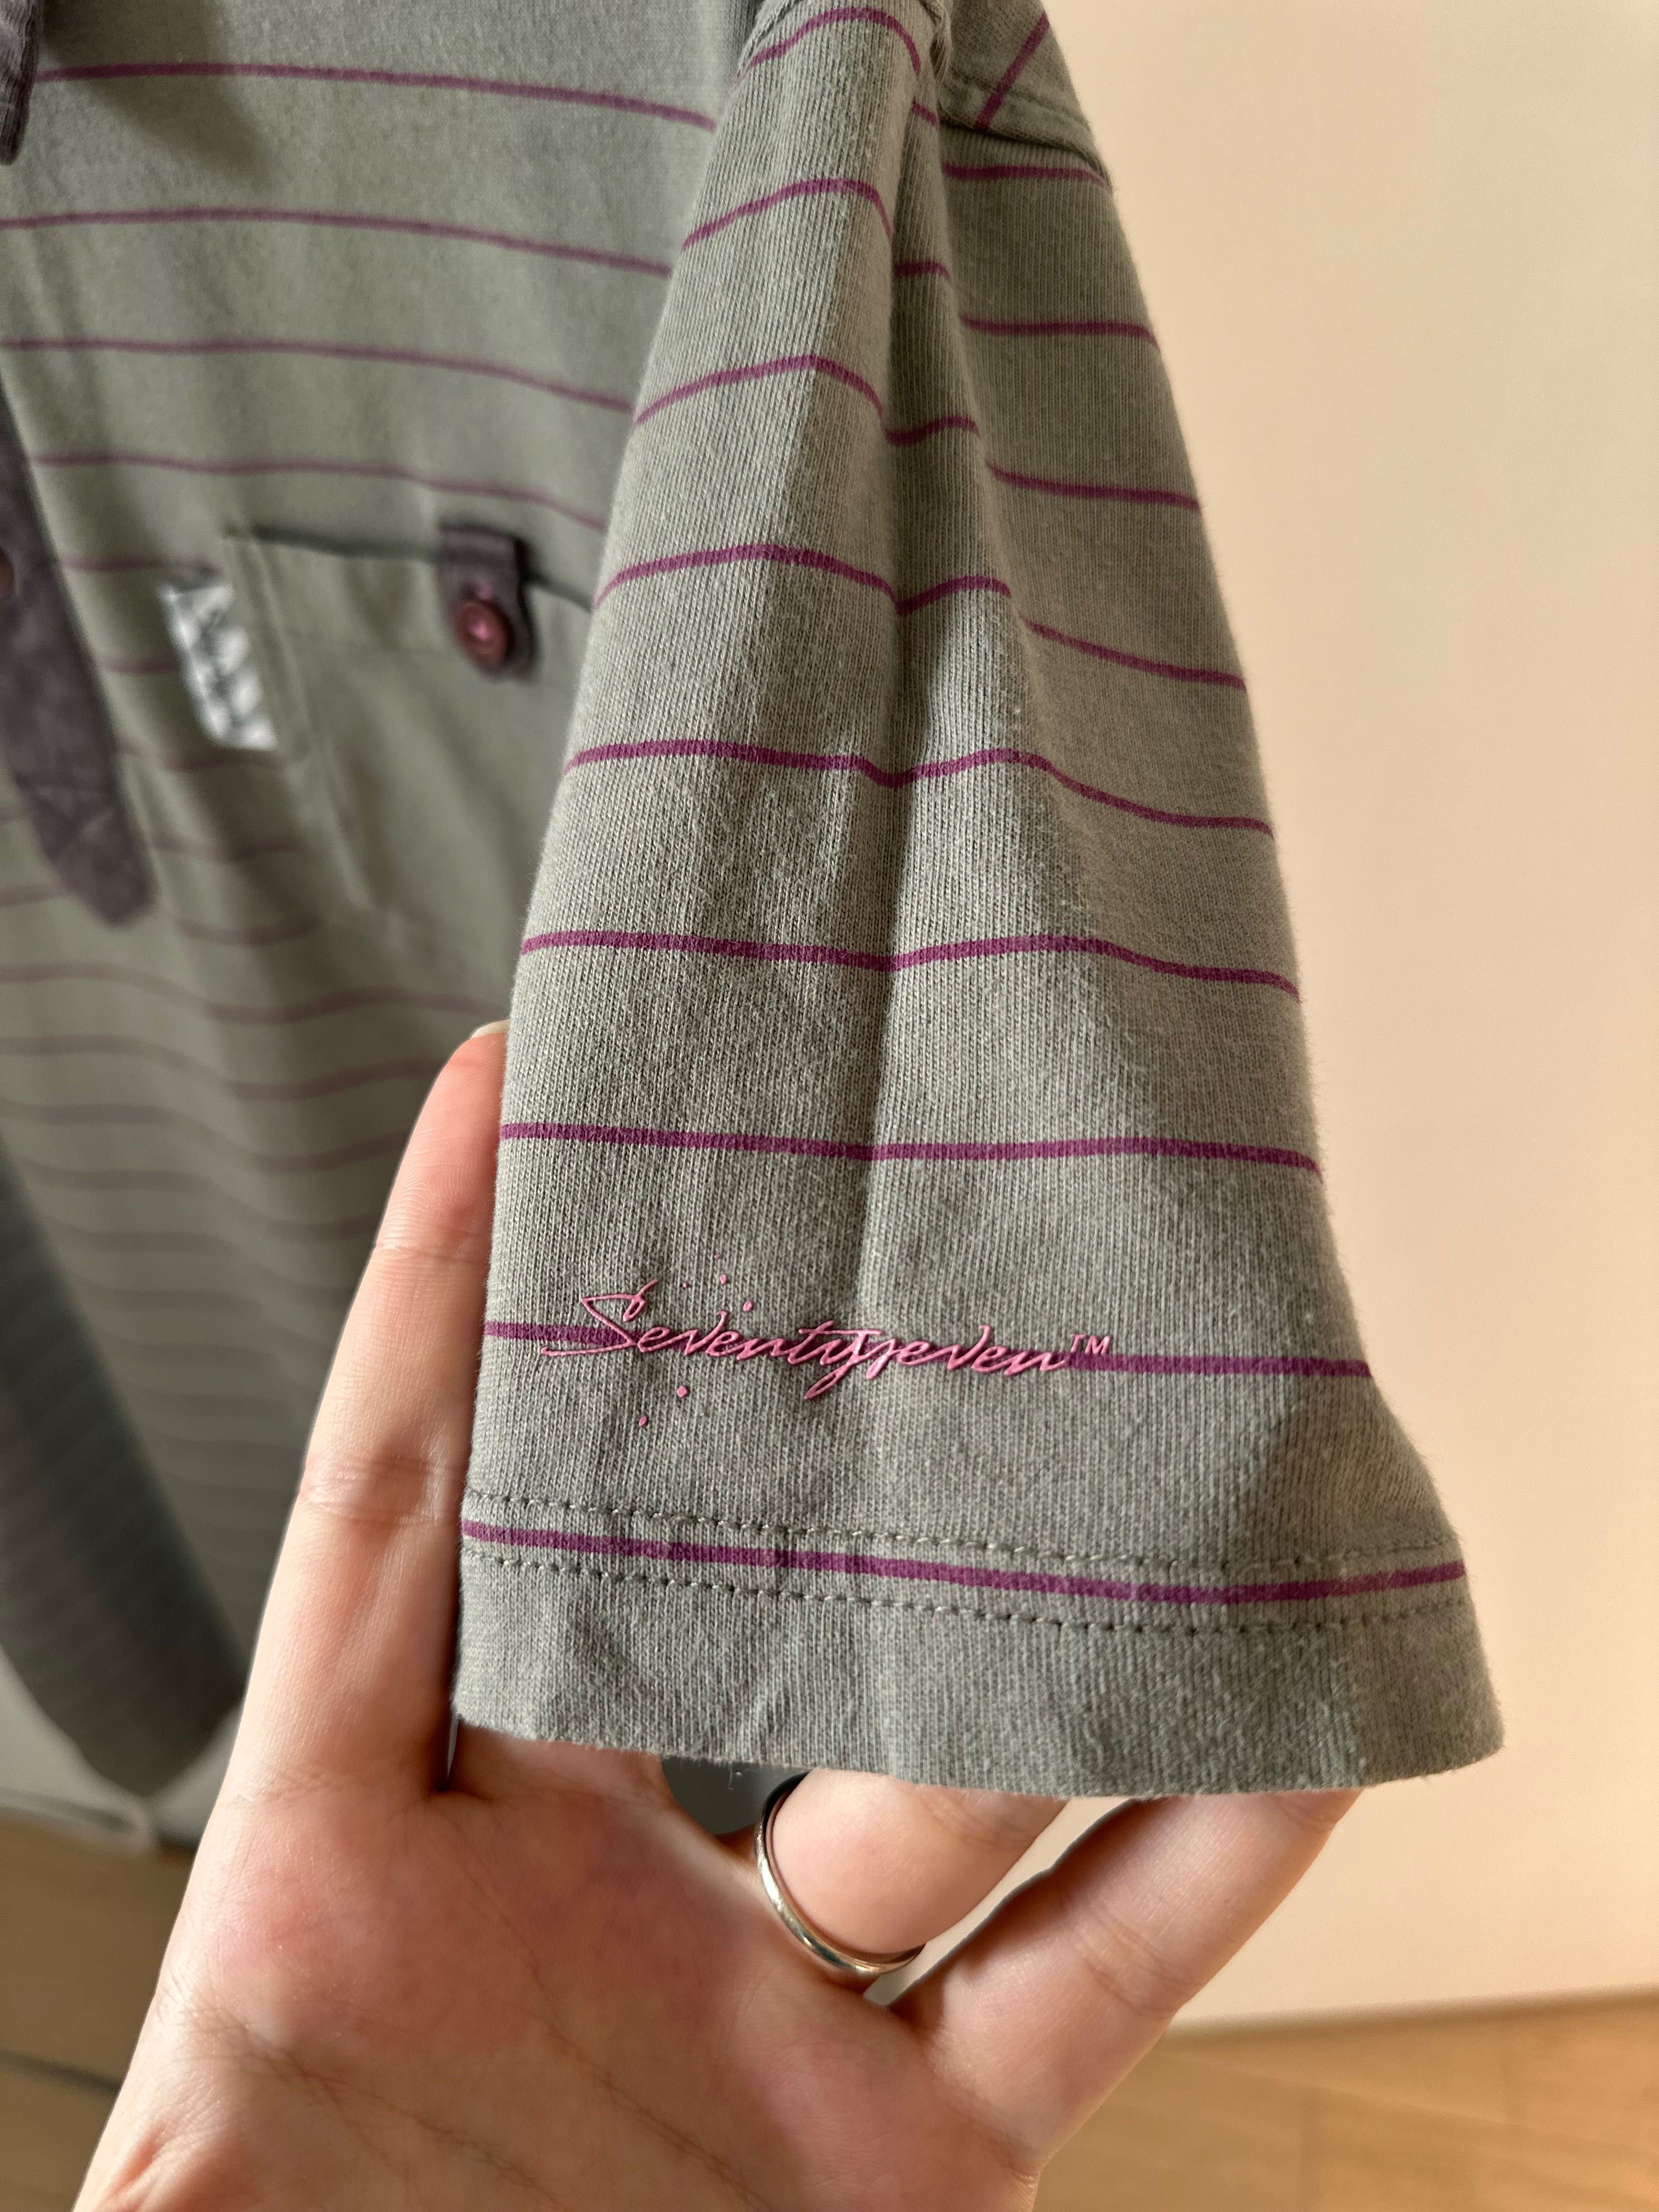 3 броя мъжки блузи (две с къс и една с дълъг ръкав) - размер М